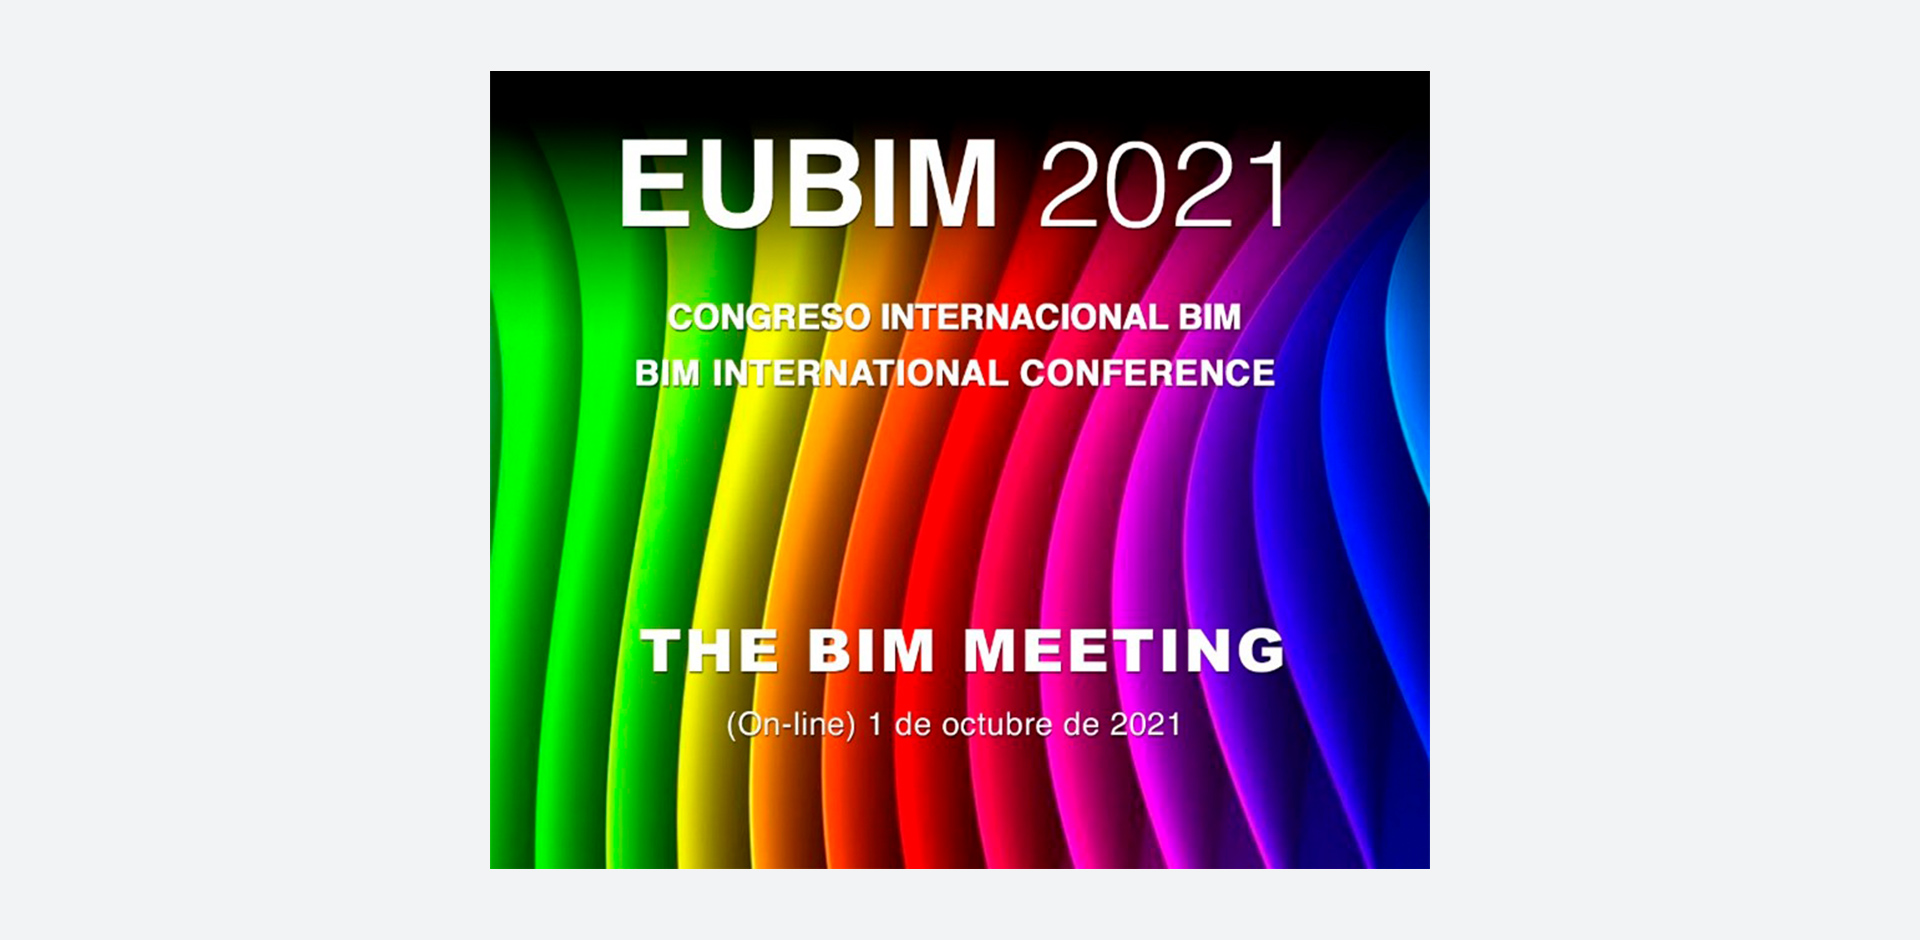 INGECID participates in EUBIM 2021